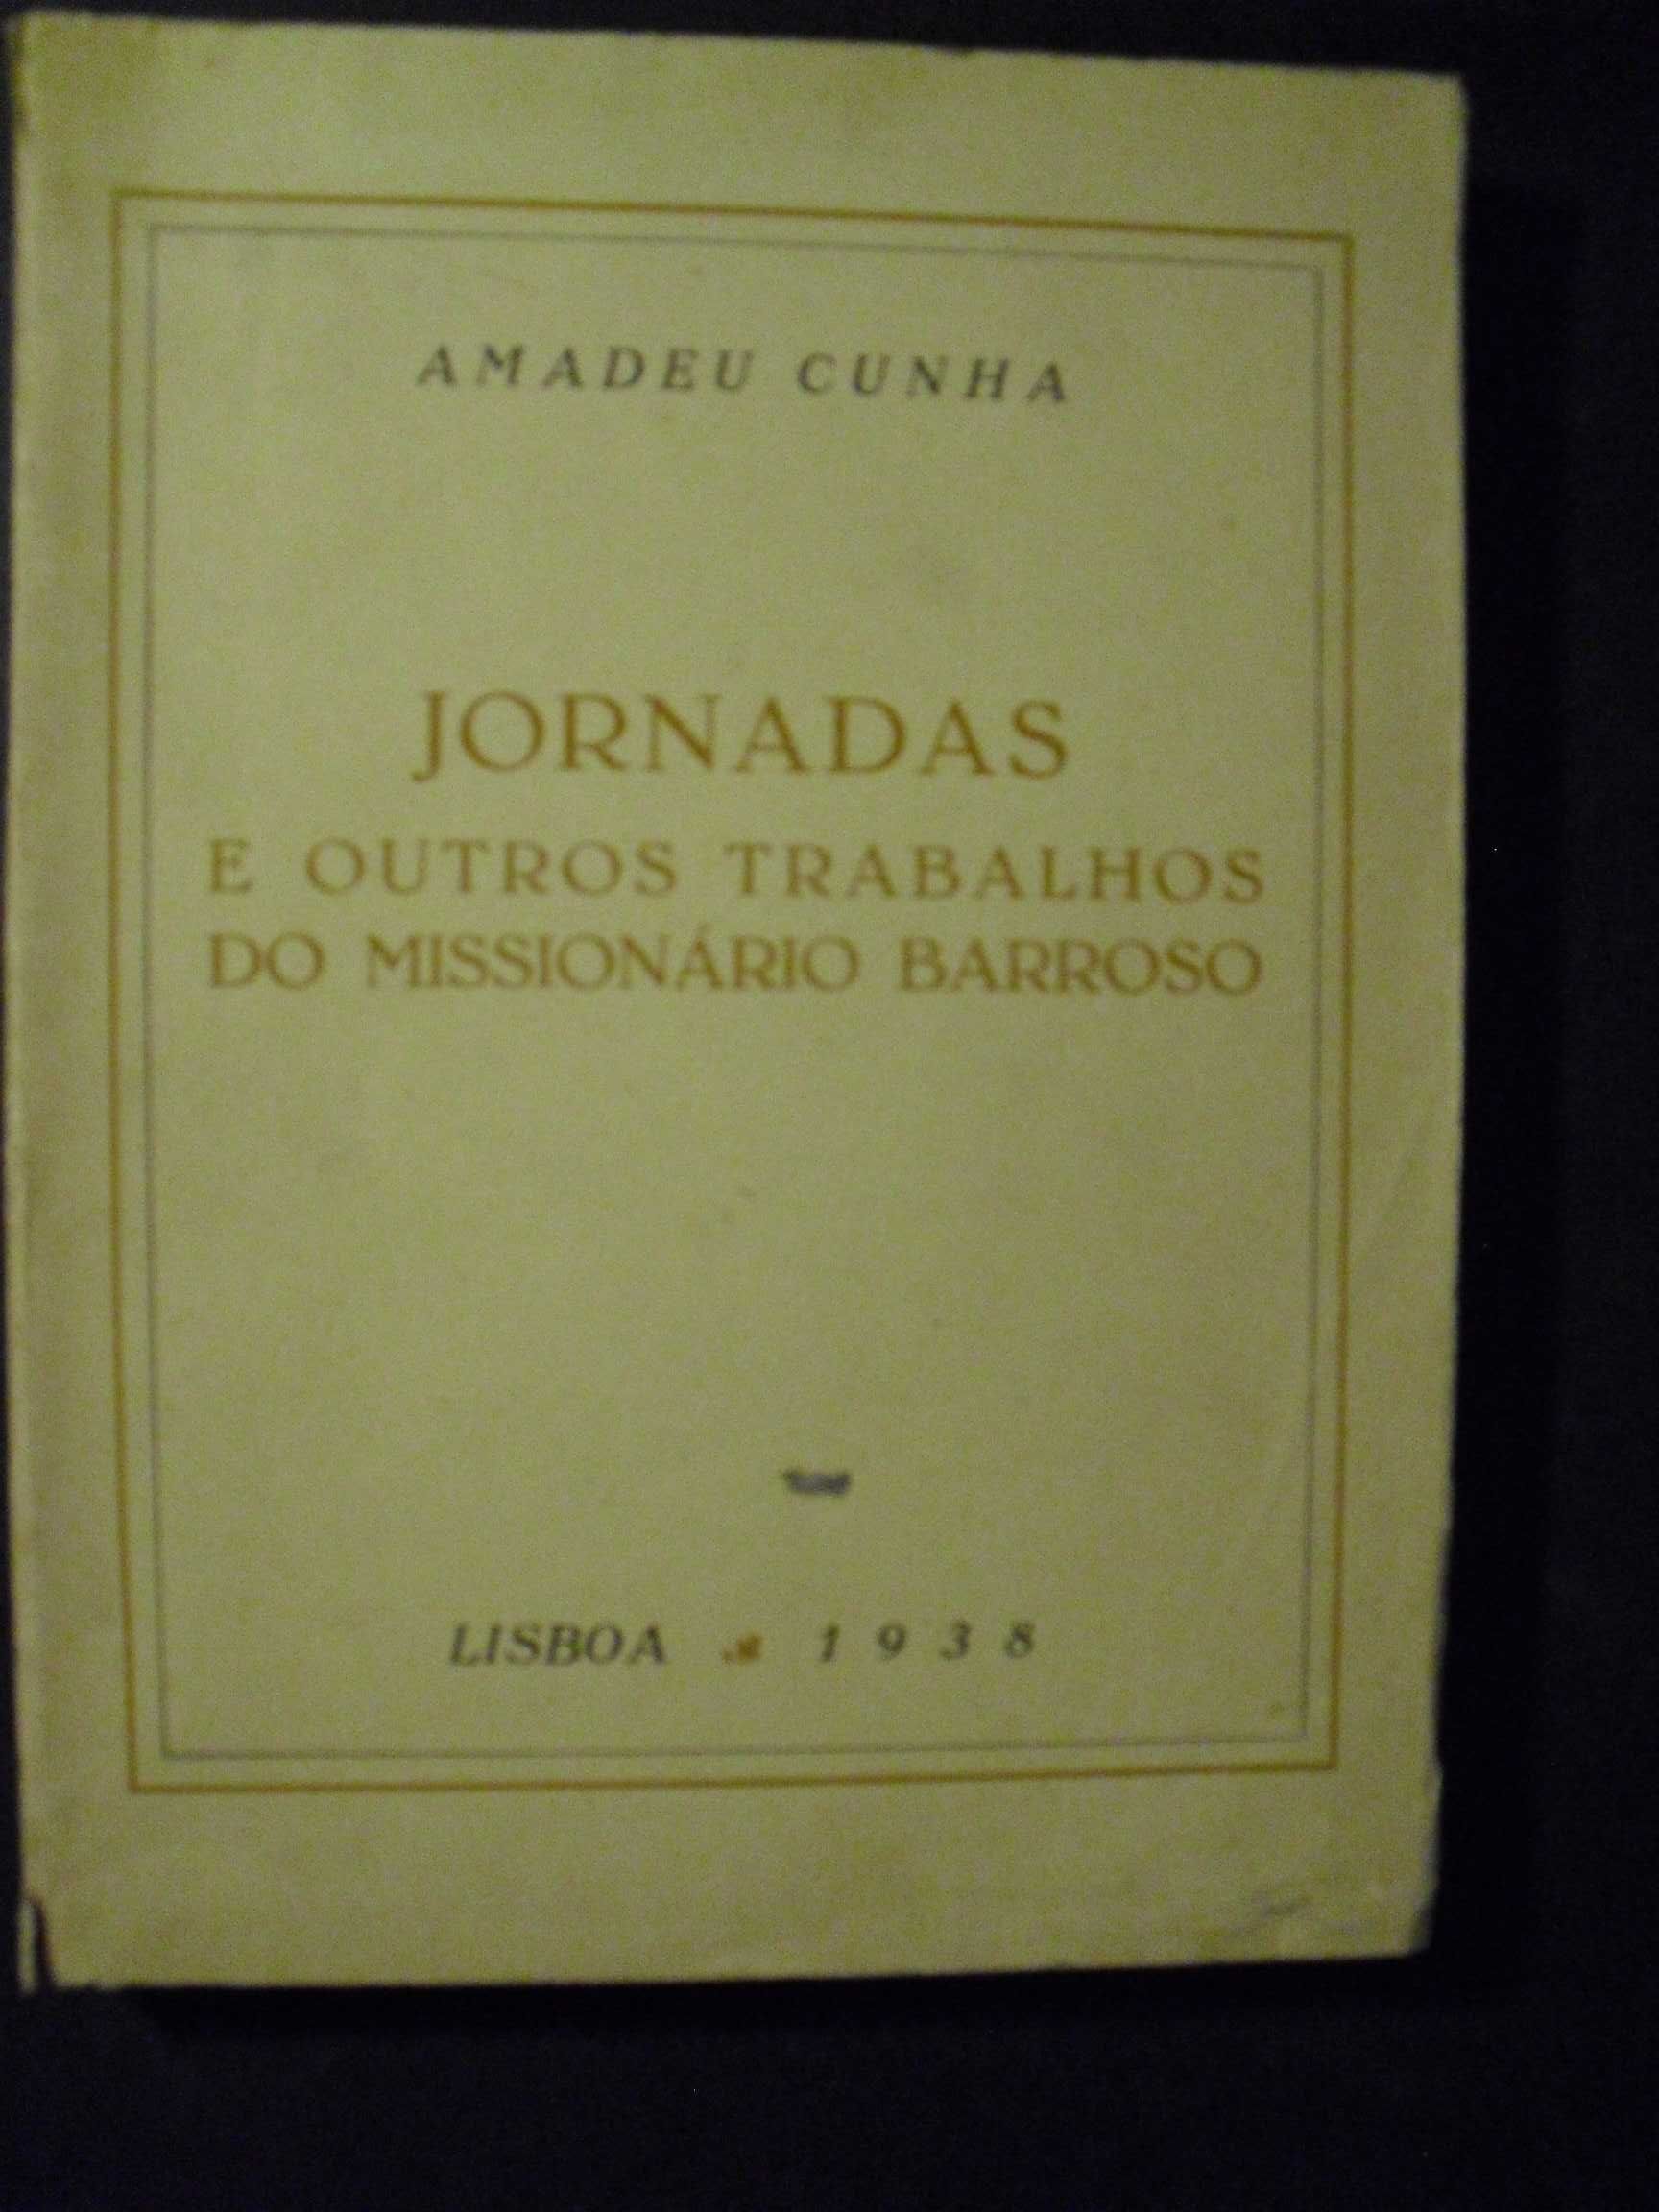 Cunha (Amadeu);Jornadas e outros Trabalhos do Missionário Barroso